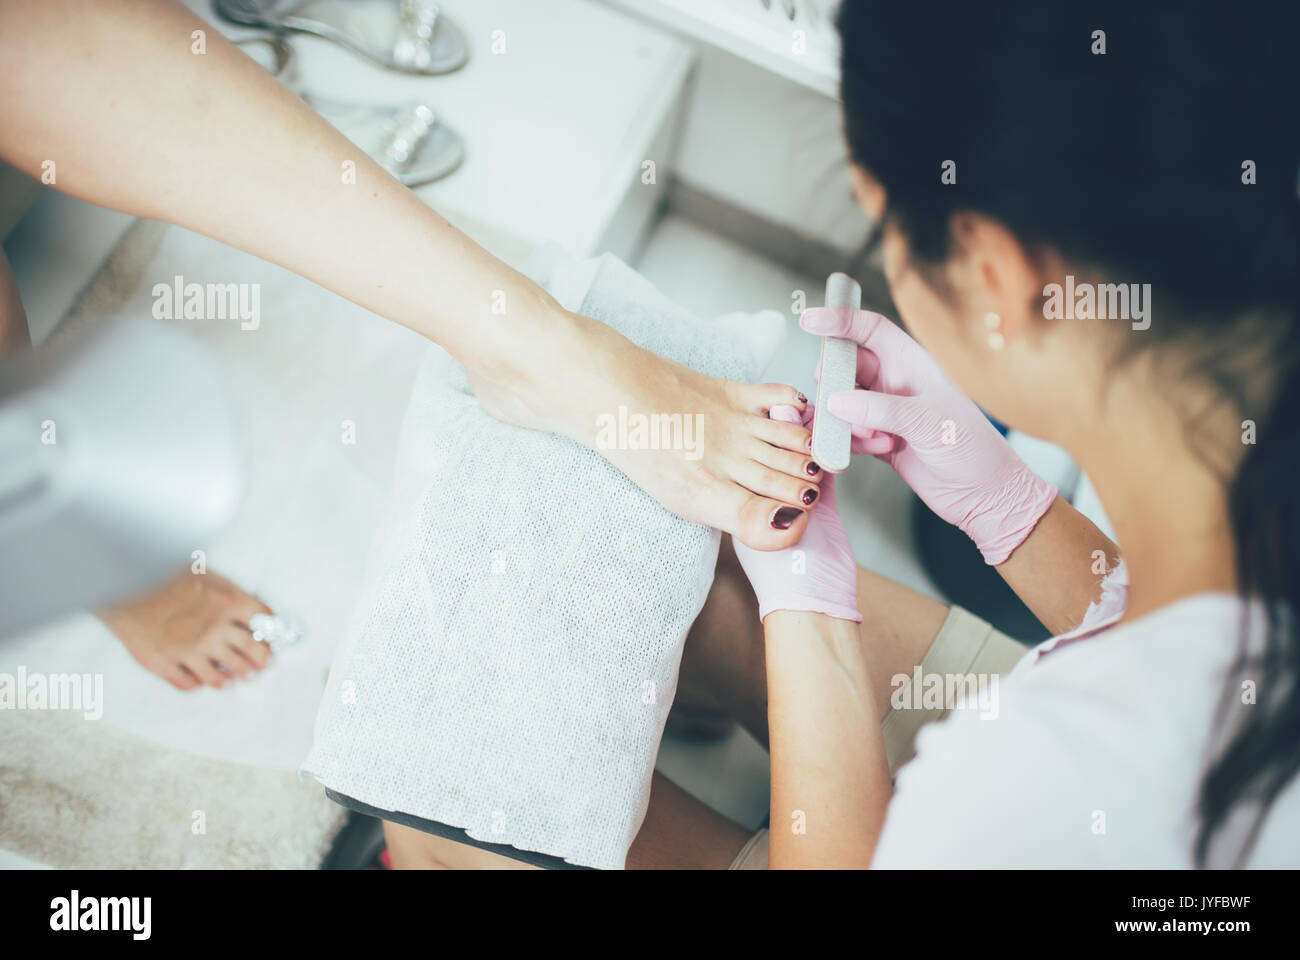 Las manos haciendo una pedicura. Los pies femeninos, salón de belleza, una imagen real Foto de stock